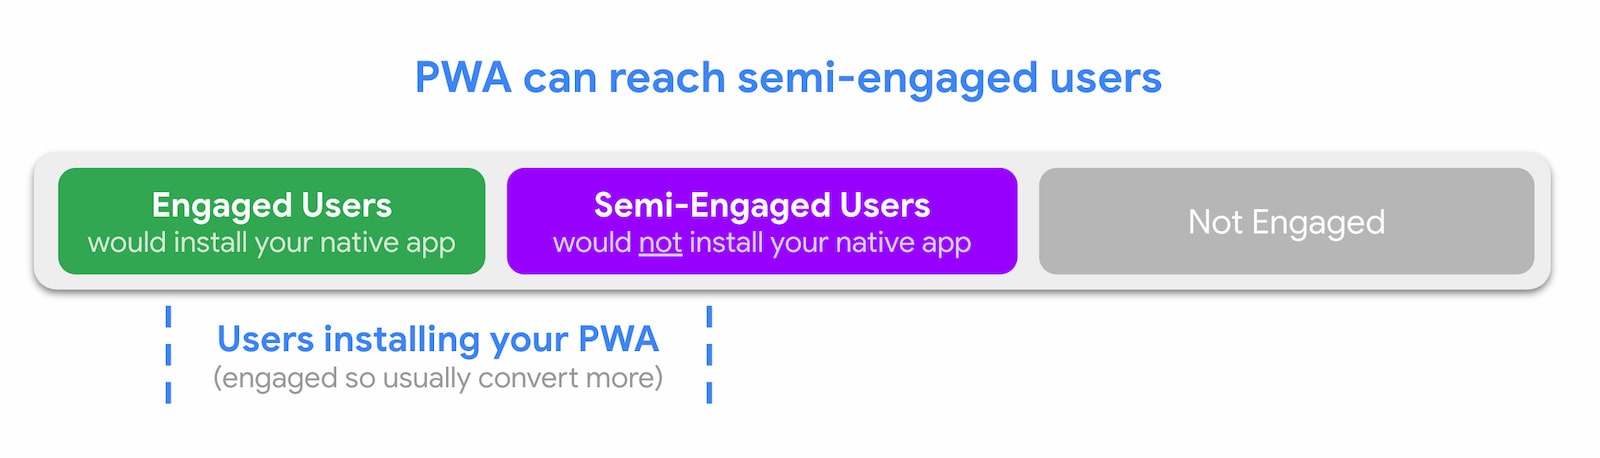 Mit PWAs lassen sich teilweise aktive Nutzer erreichen.